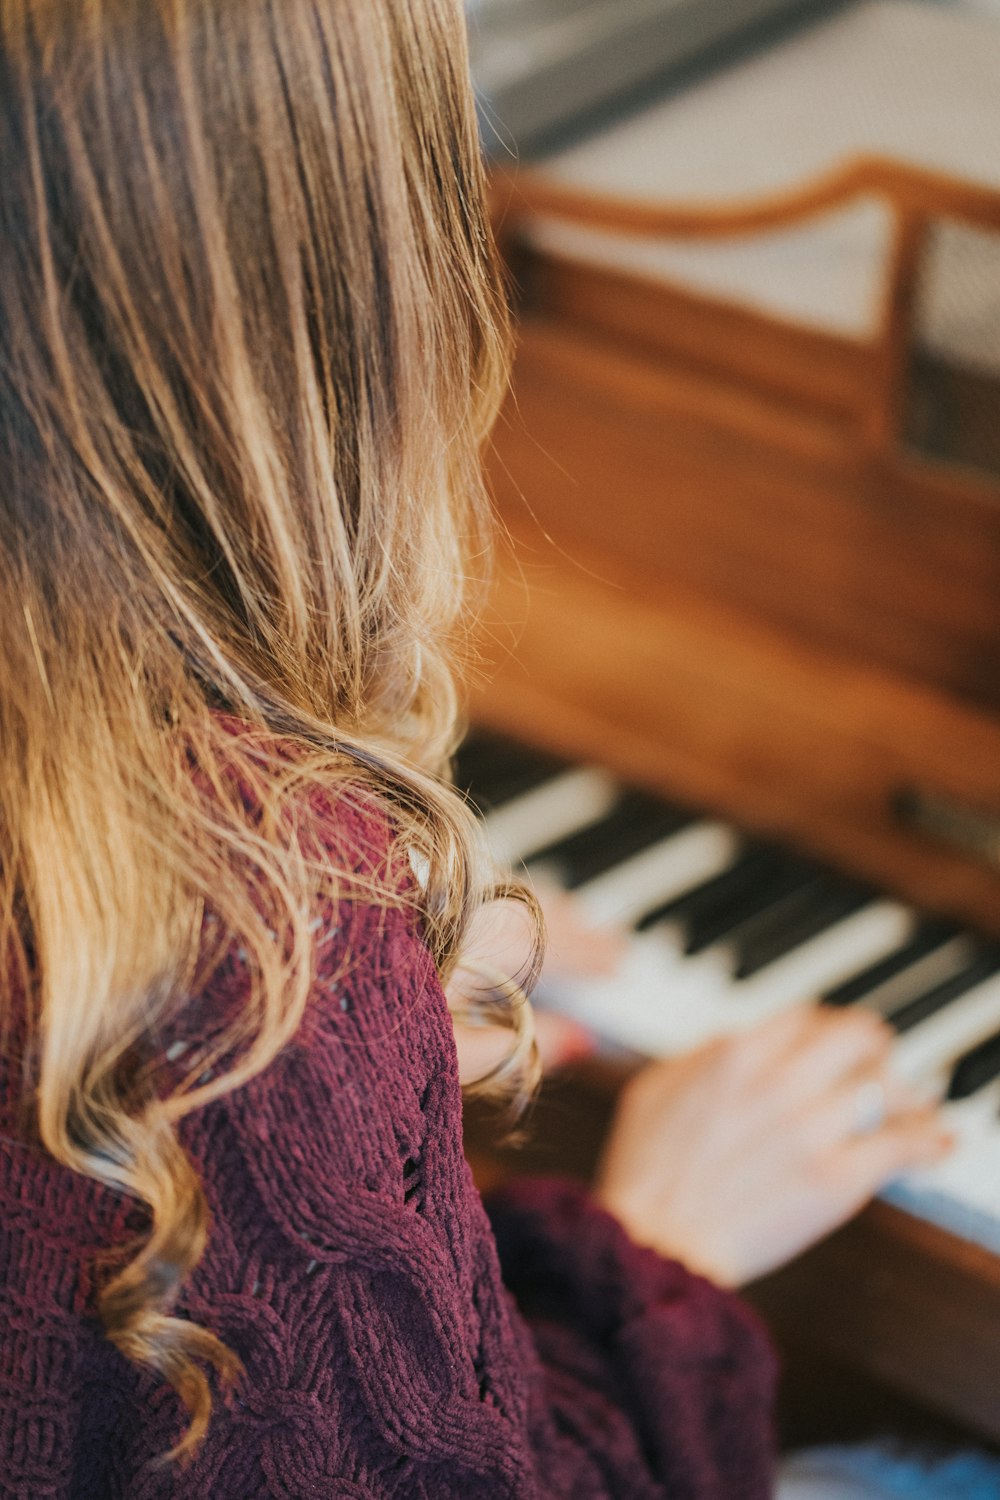 Foto mujer tocando el piano – Imagen Piano gratis en Unsplash